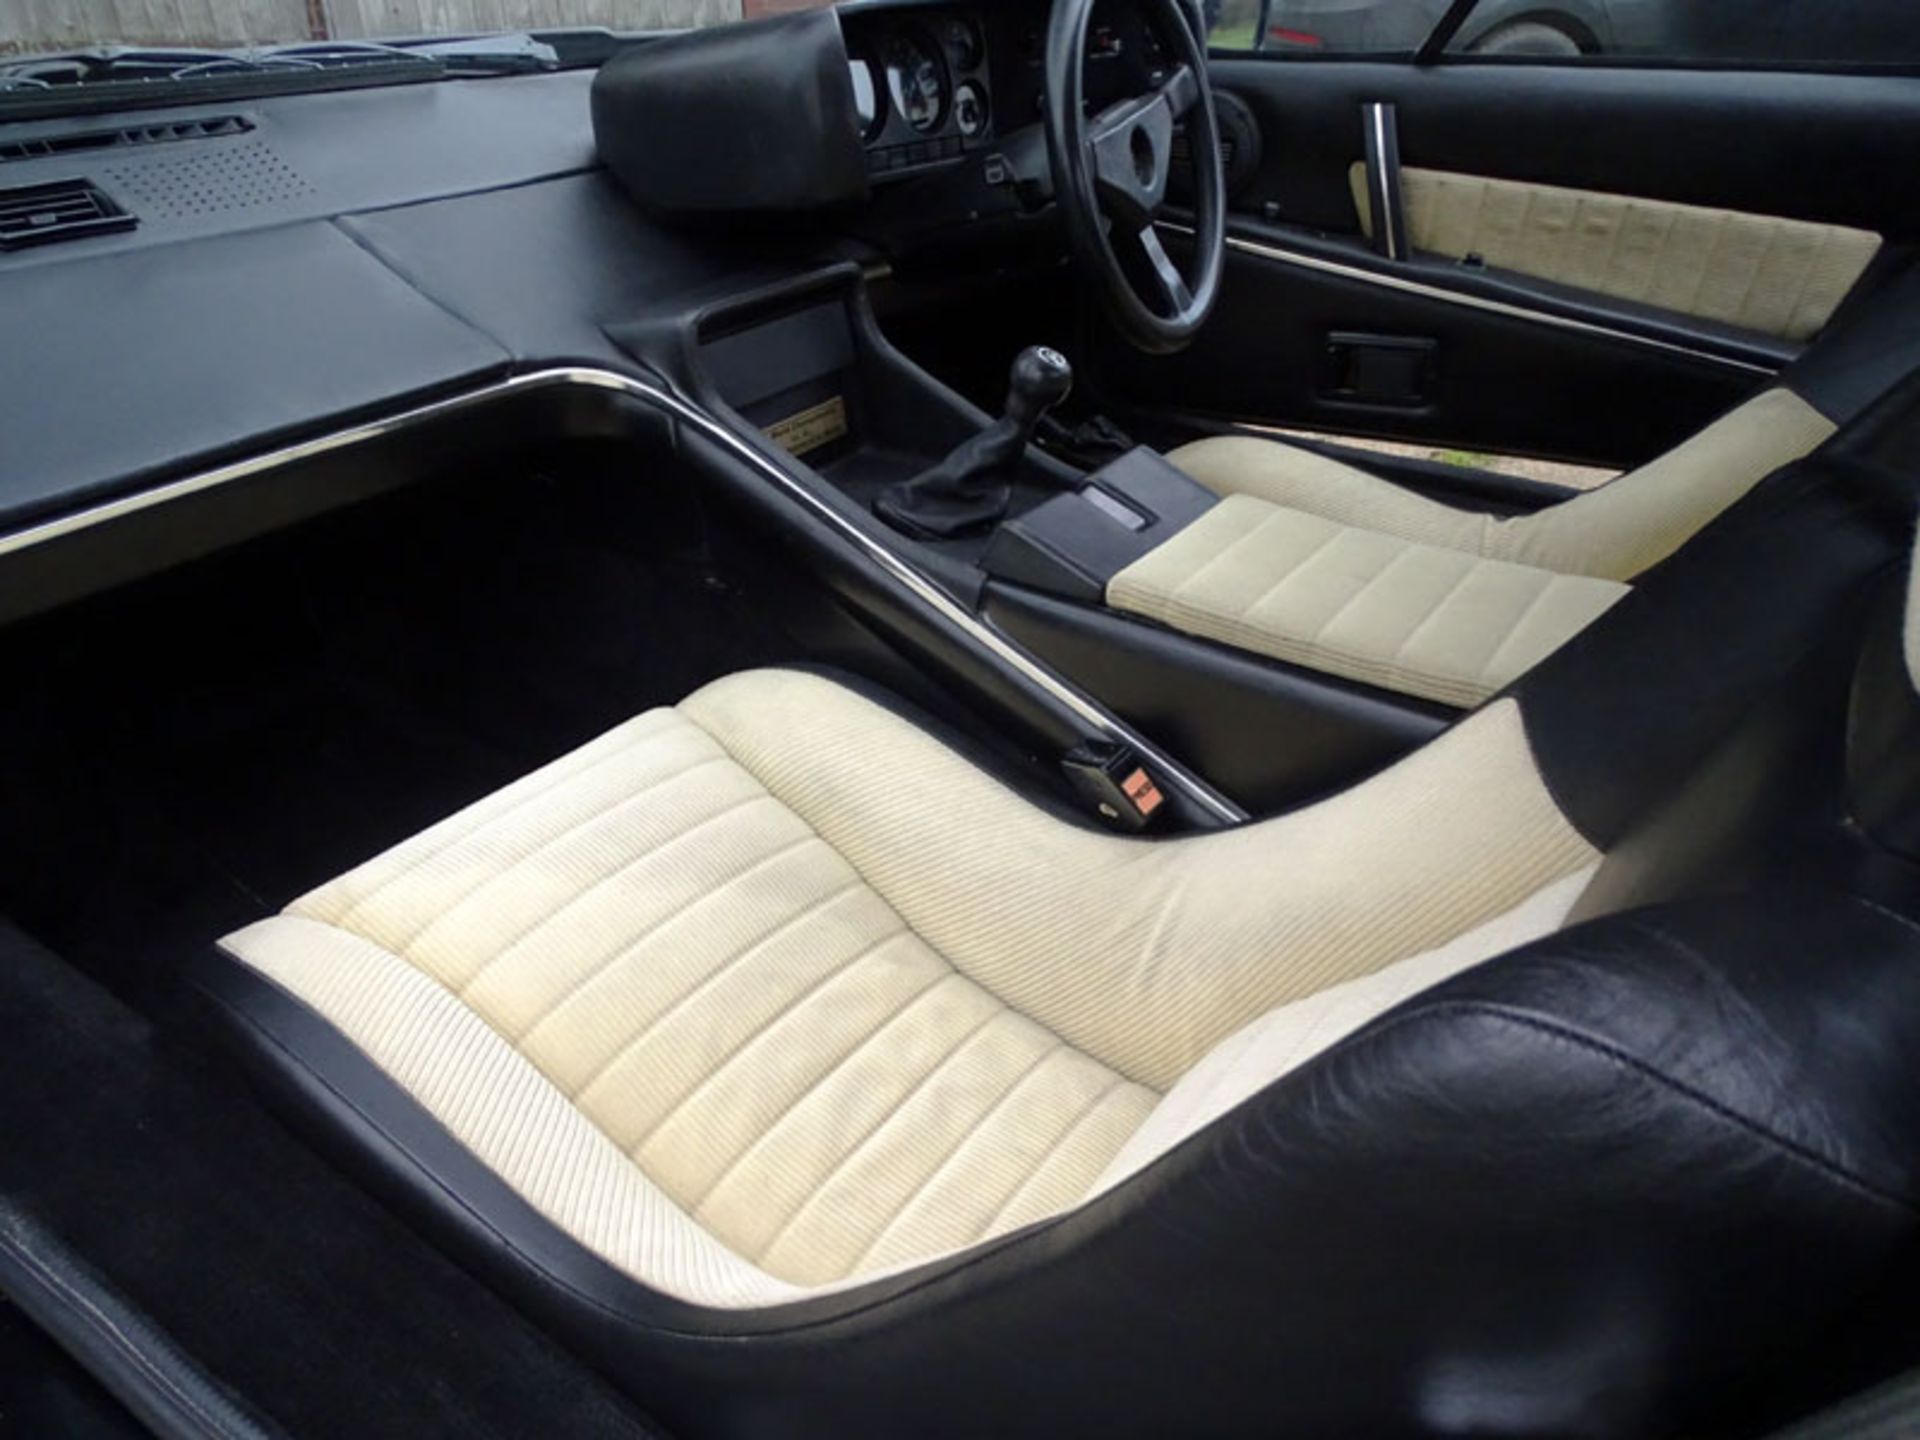 1979 Lotus Esprit 'Commemorative' - Image 6 of 12